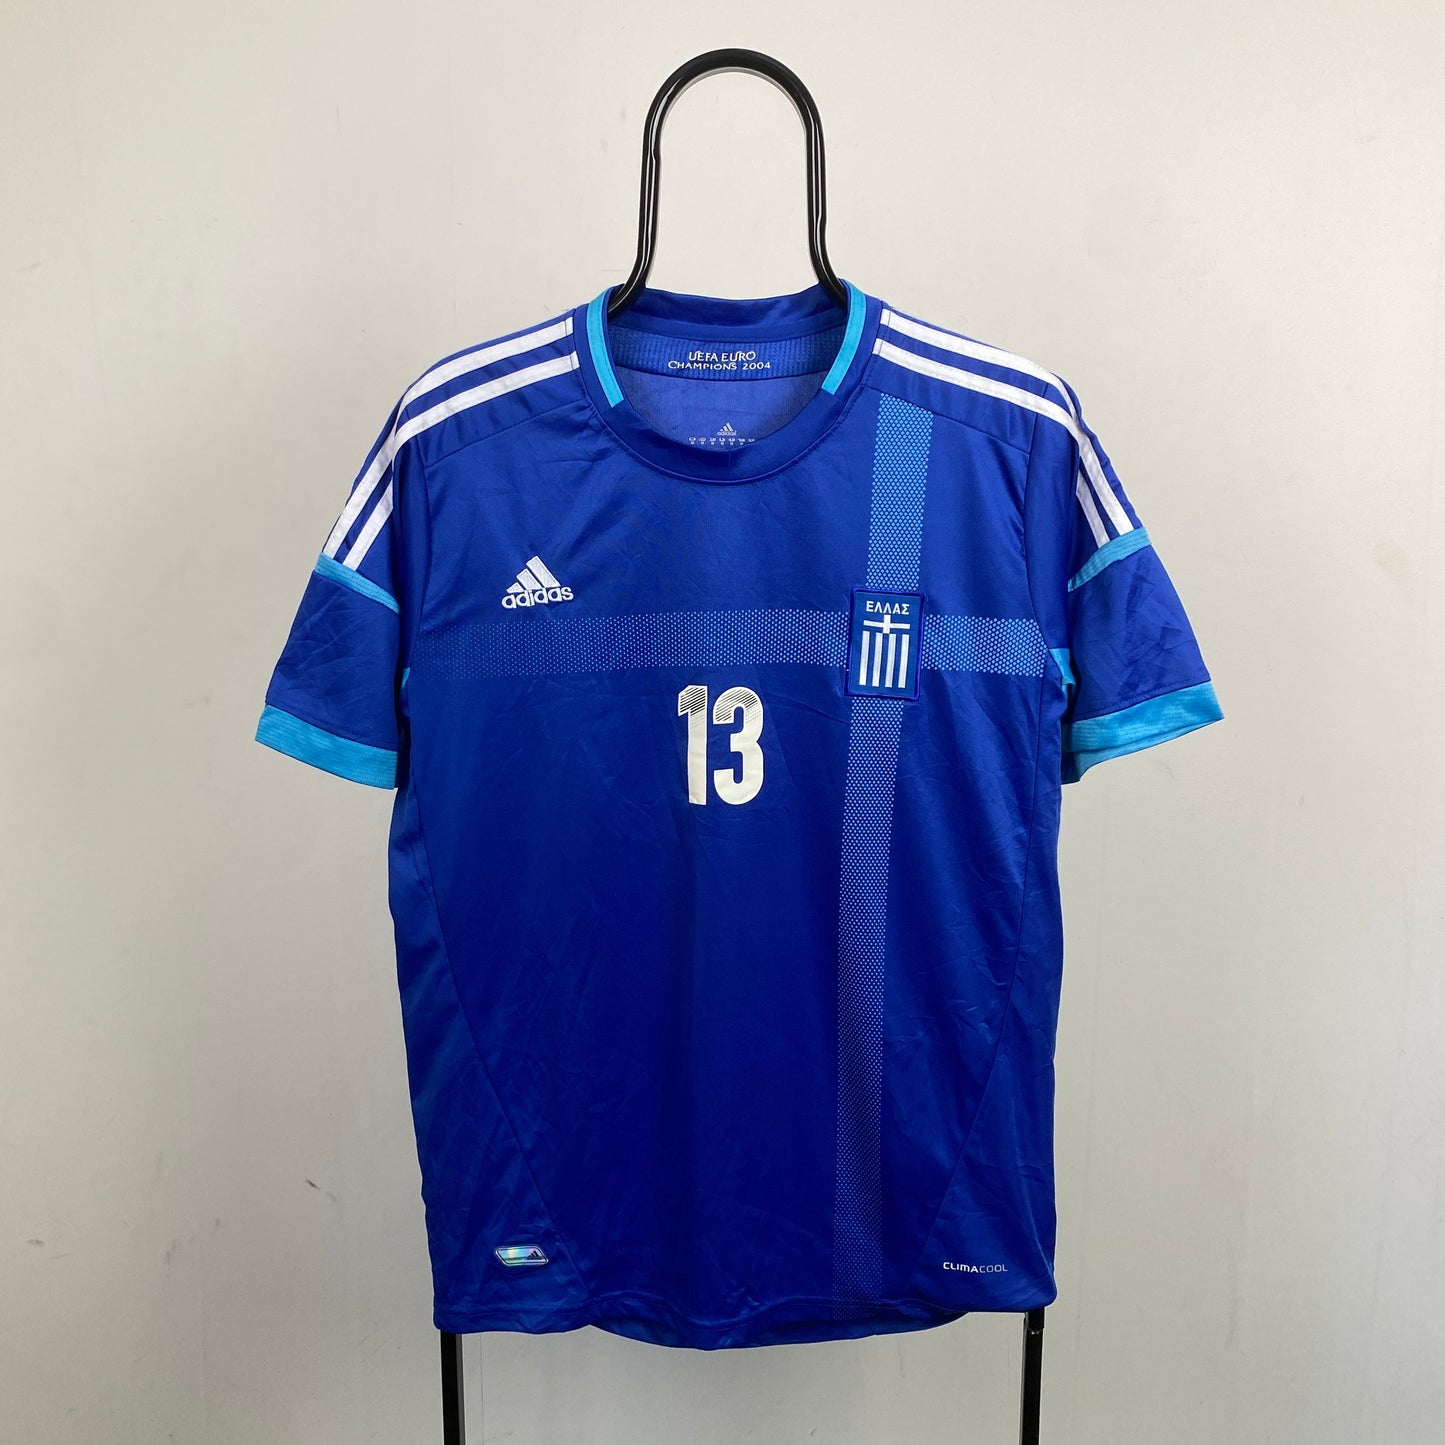 00s Adidas Greece Football Shirt T-Shirt Blue Medium